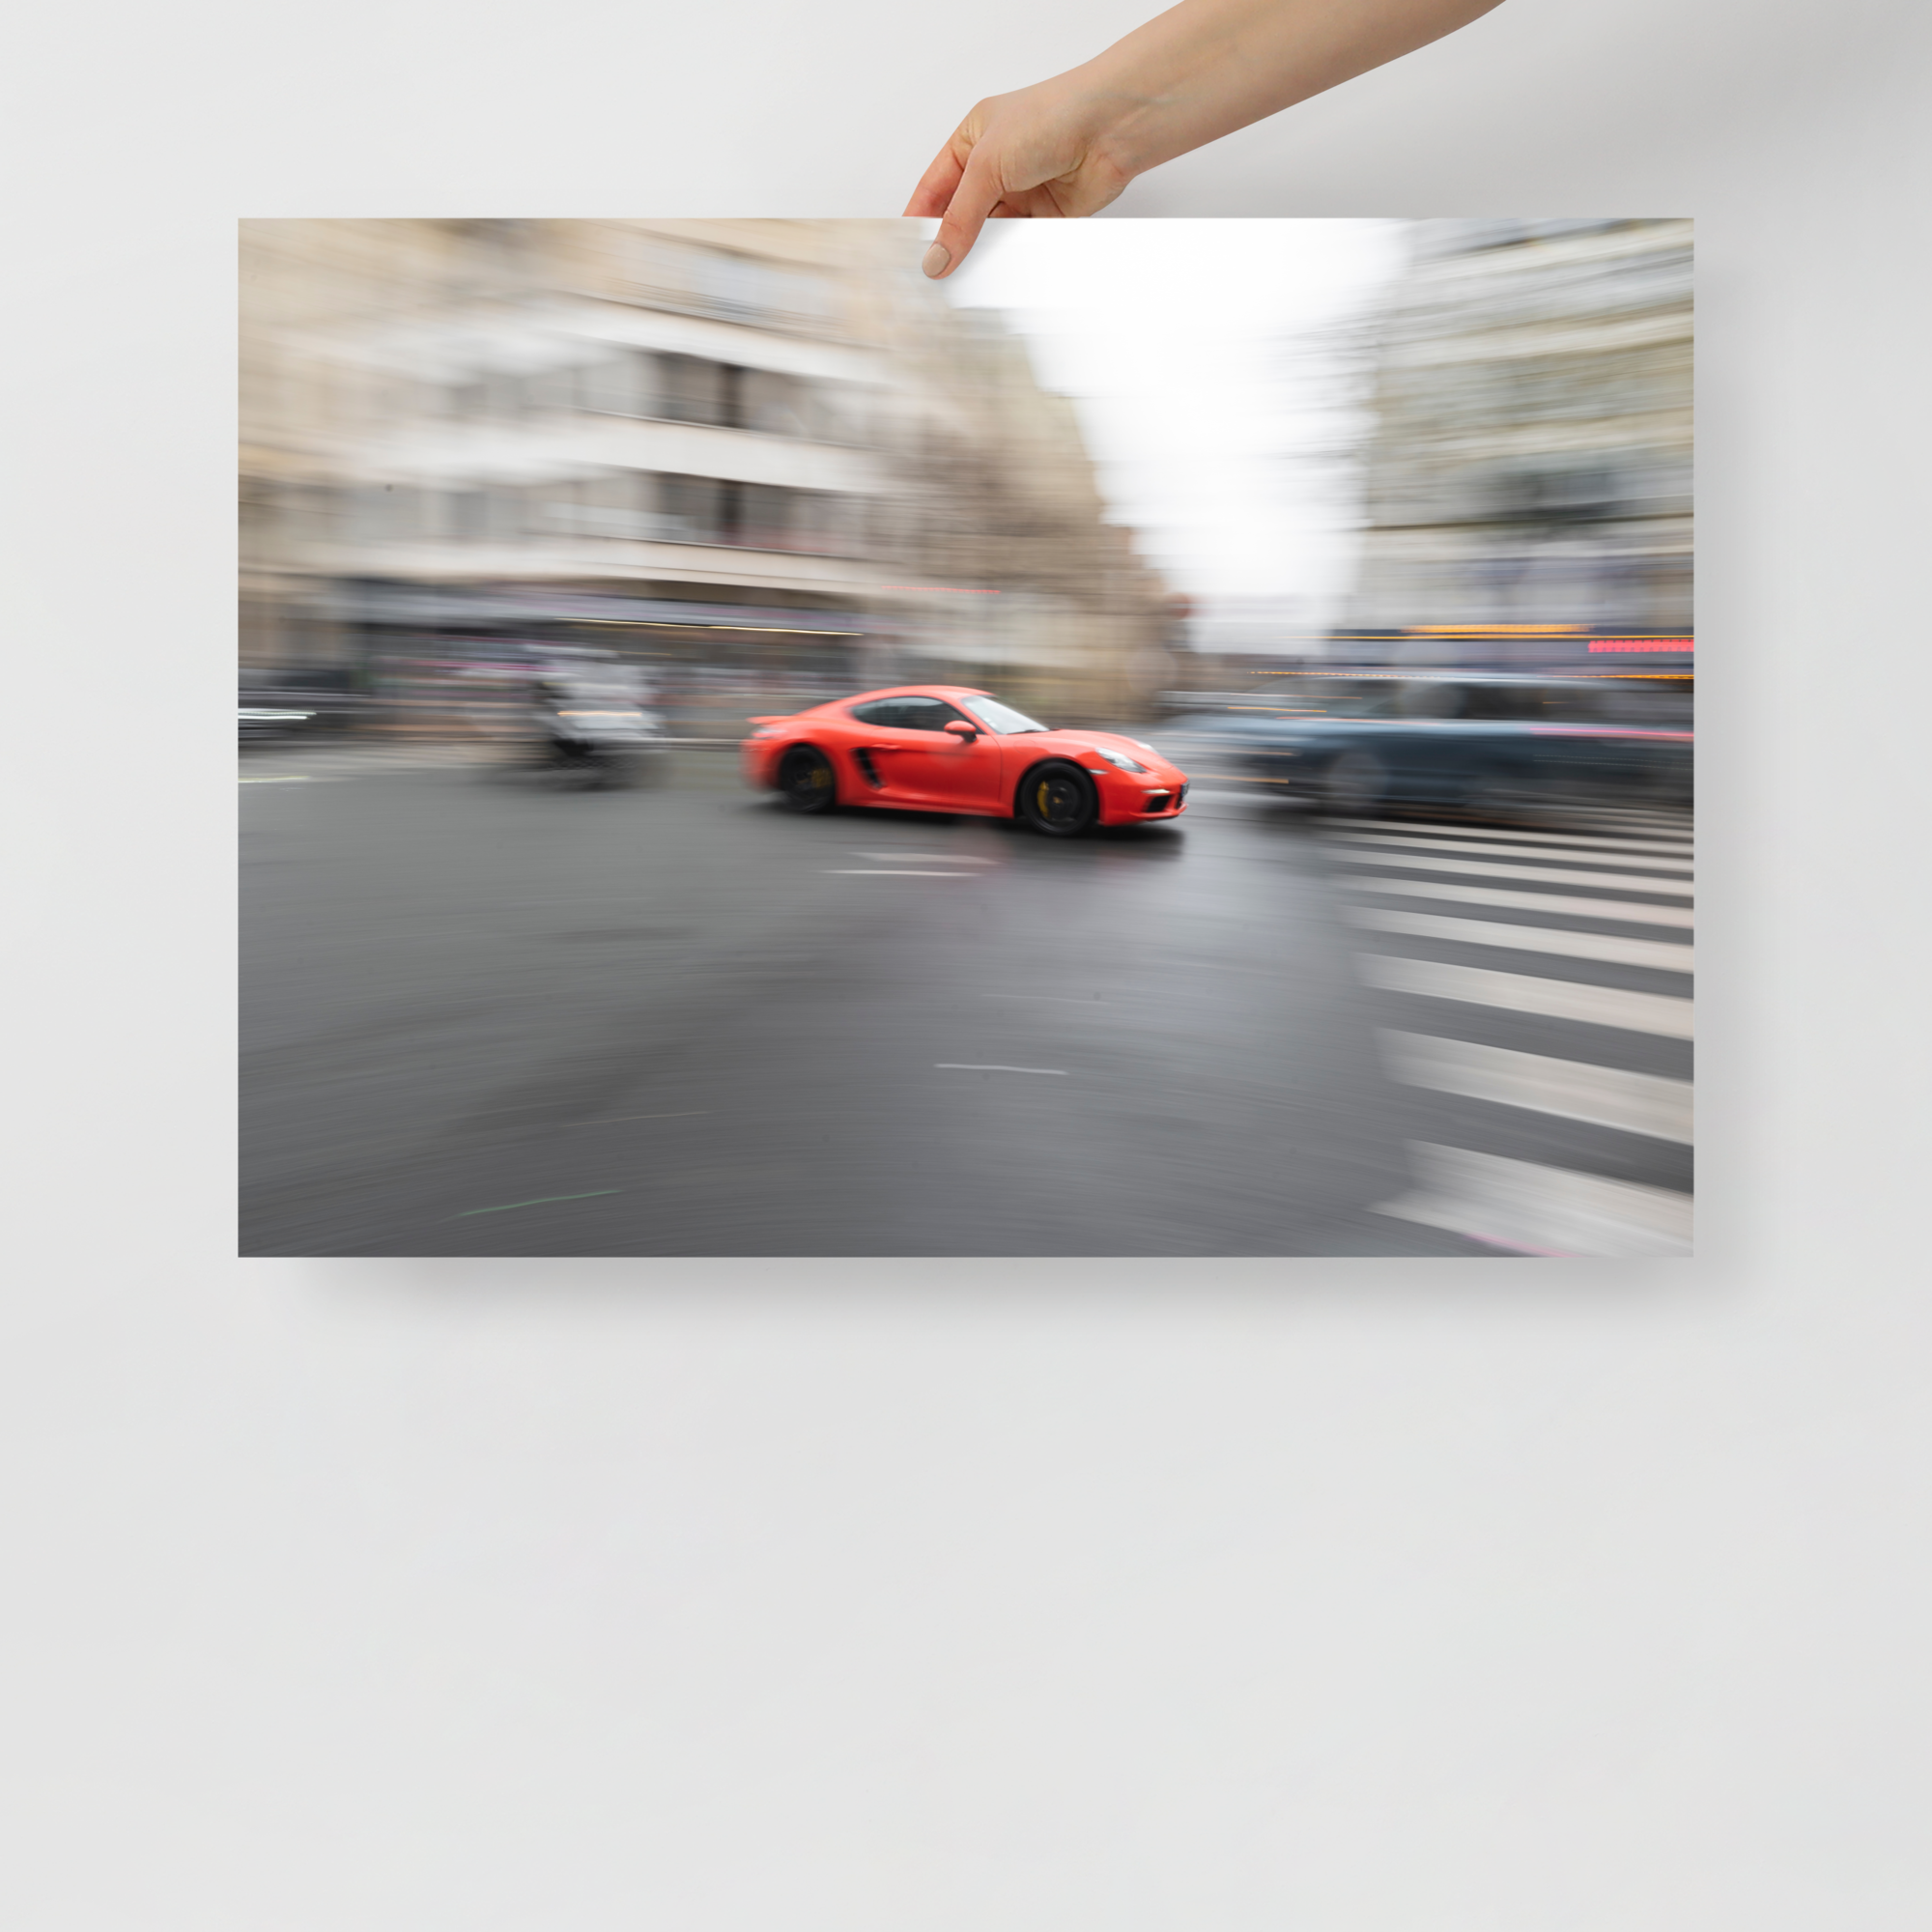 Poster mural - Porsche 718 Cayman S – Photographie de voiture de sport – Poster photo, poster XXL, photographie murale et des posters muraux unique au monde. La boutique de posters créée par Yann Peccard un Photographe français.